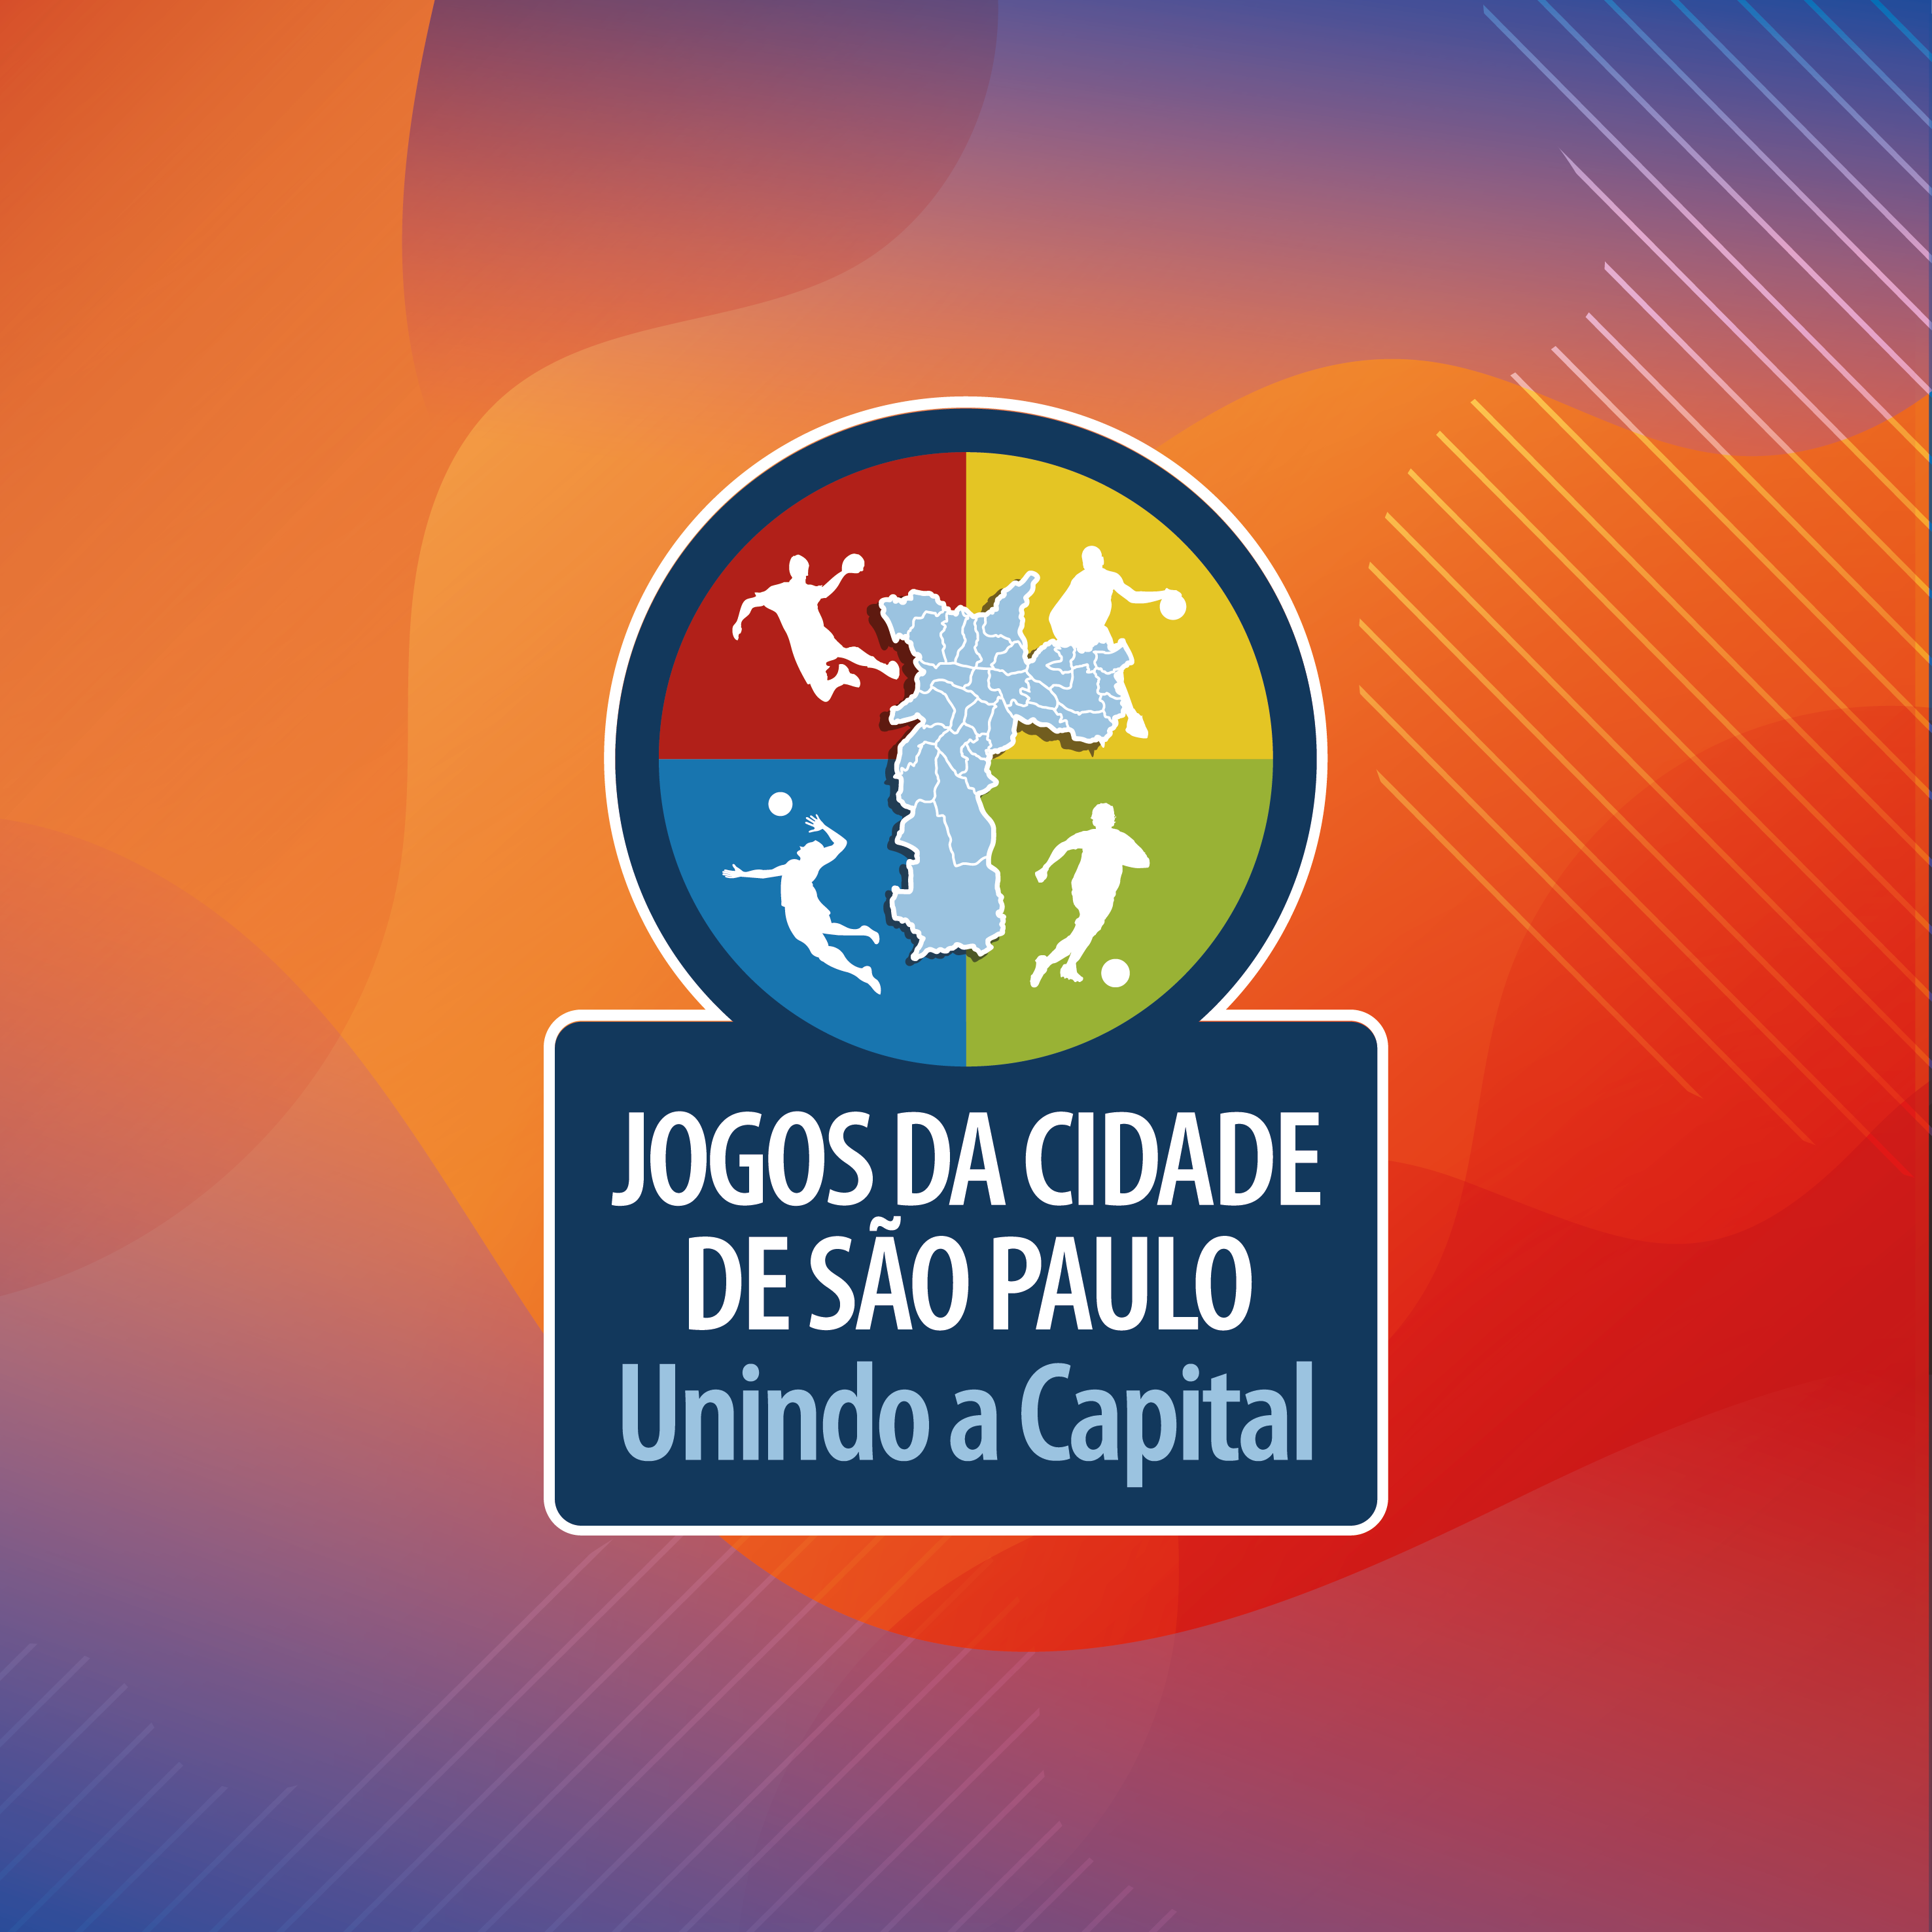 Logo Oficial do Jogos da Cidade de São Paulo - Unindo a Capital.